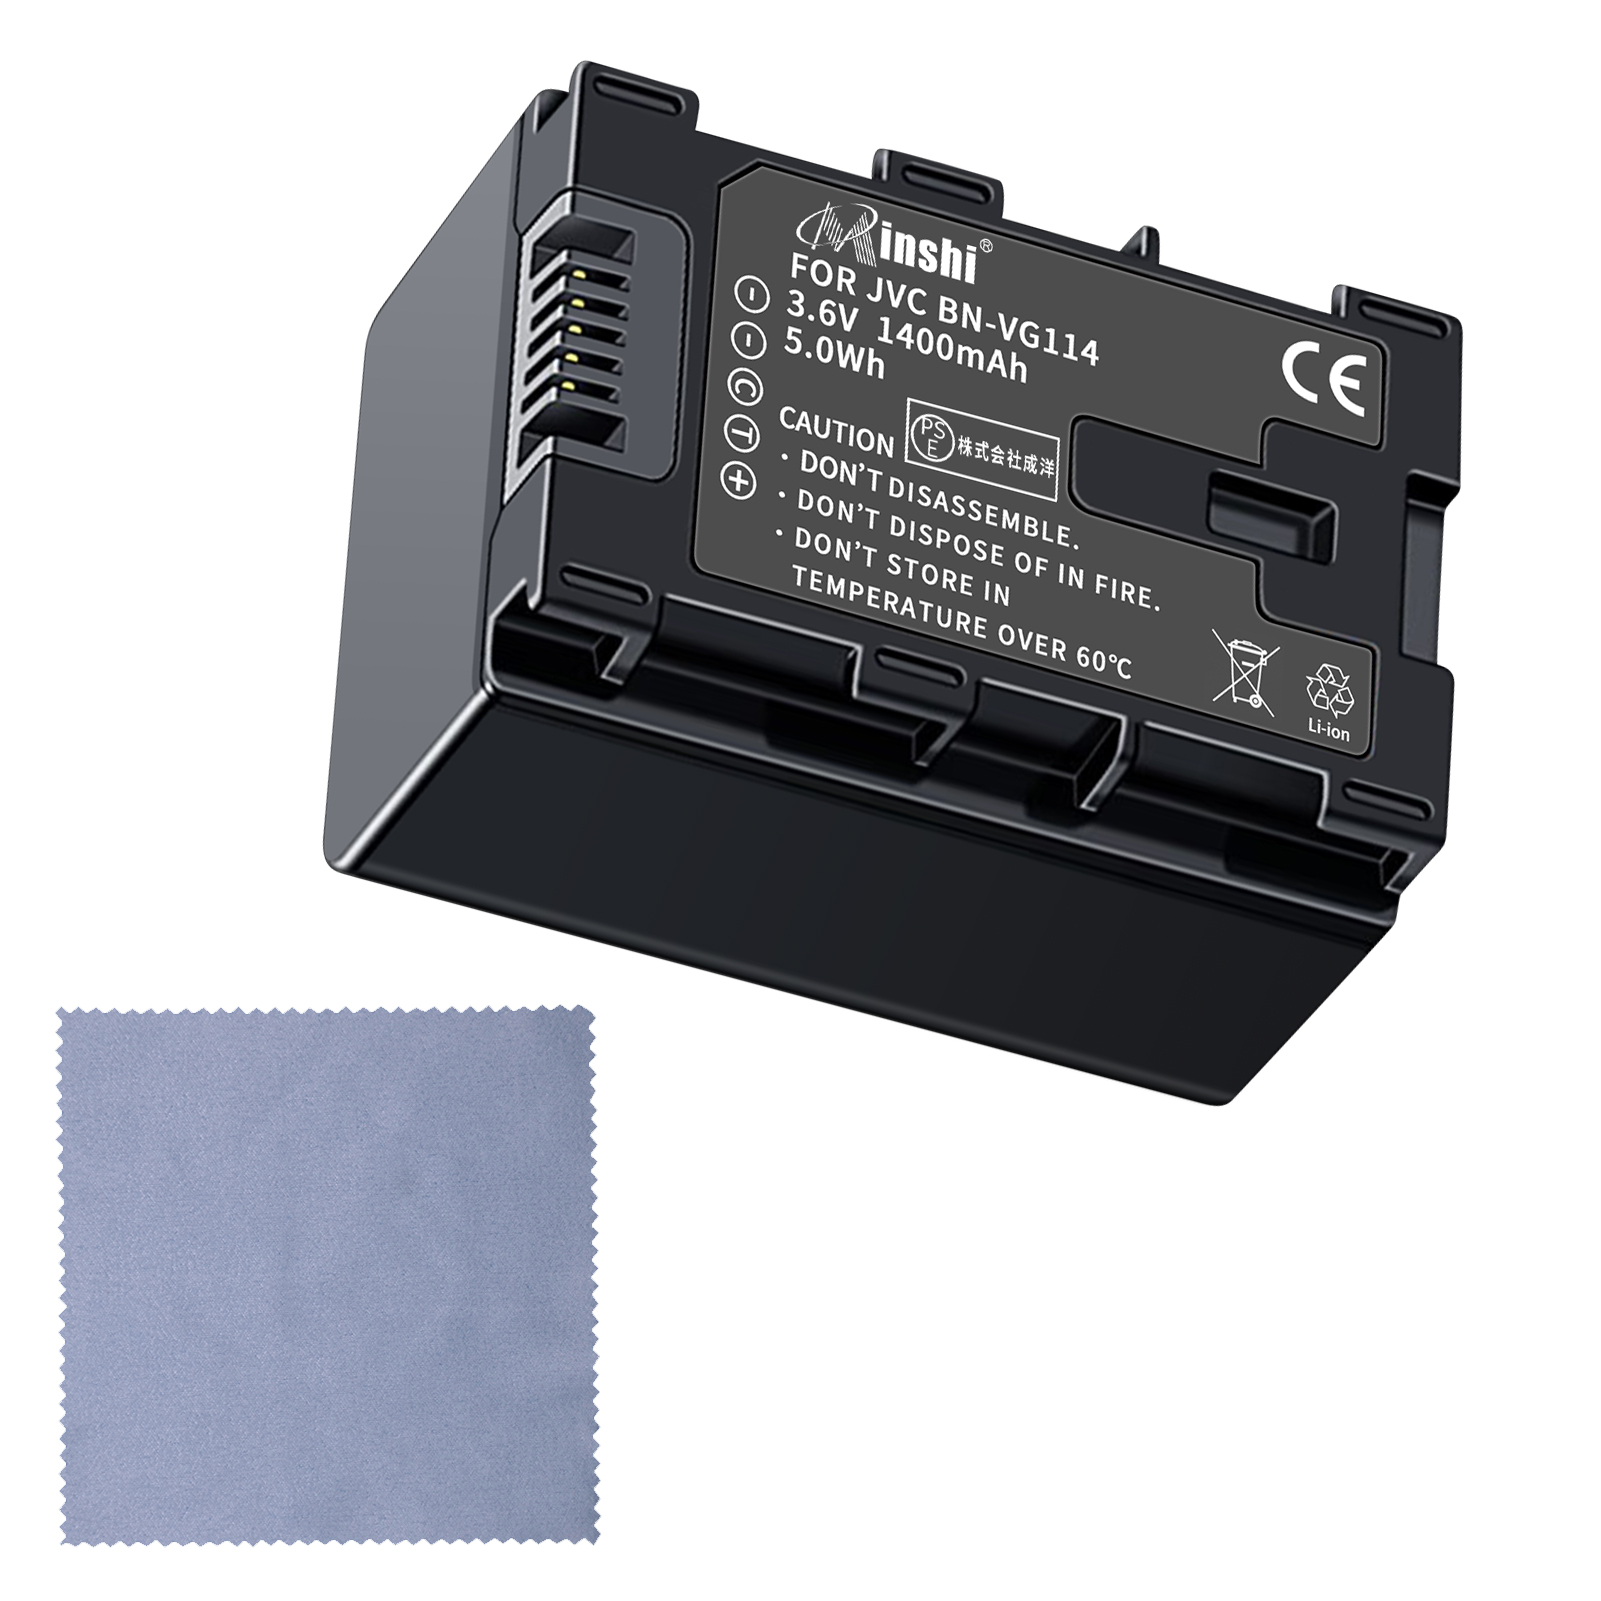 【清潔布ー付】minshi VICTOR GZ-E265 対応 互換バッテリー 1400mAh PSE認定済 高品質BN-VG114交換用バッテリー